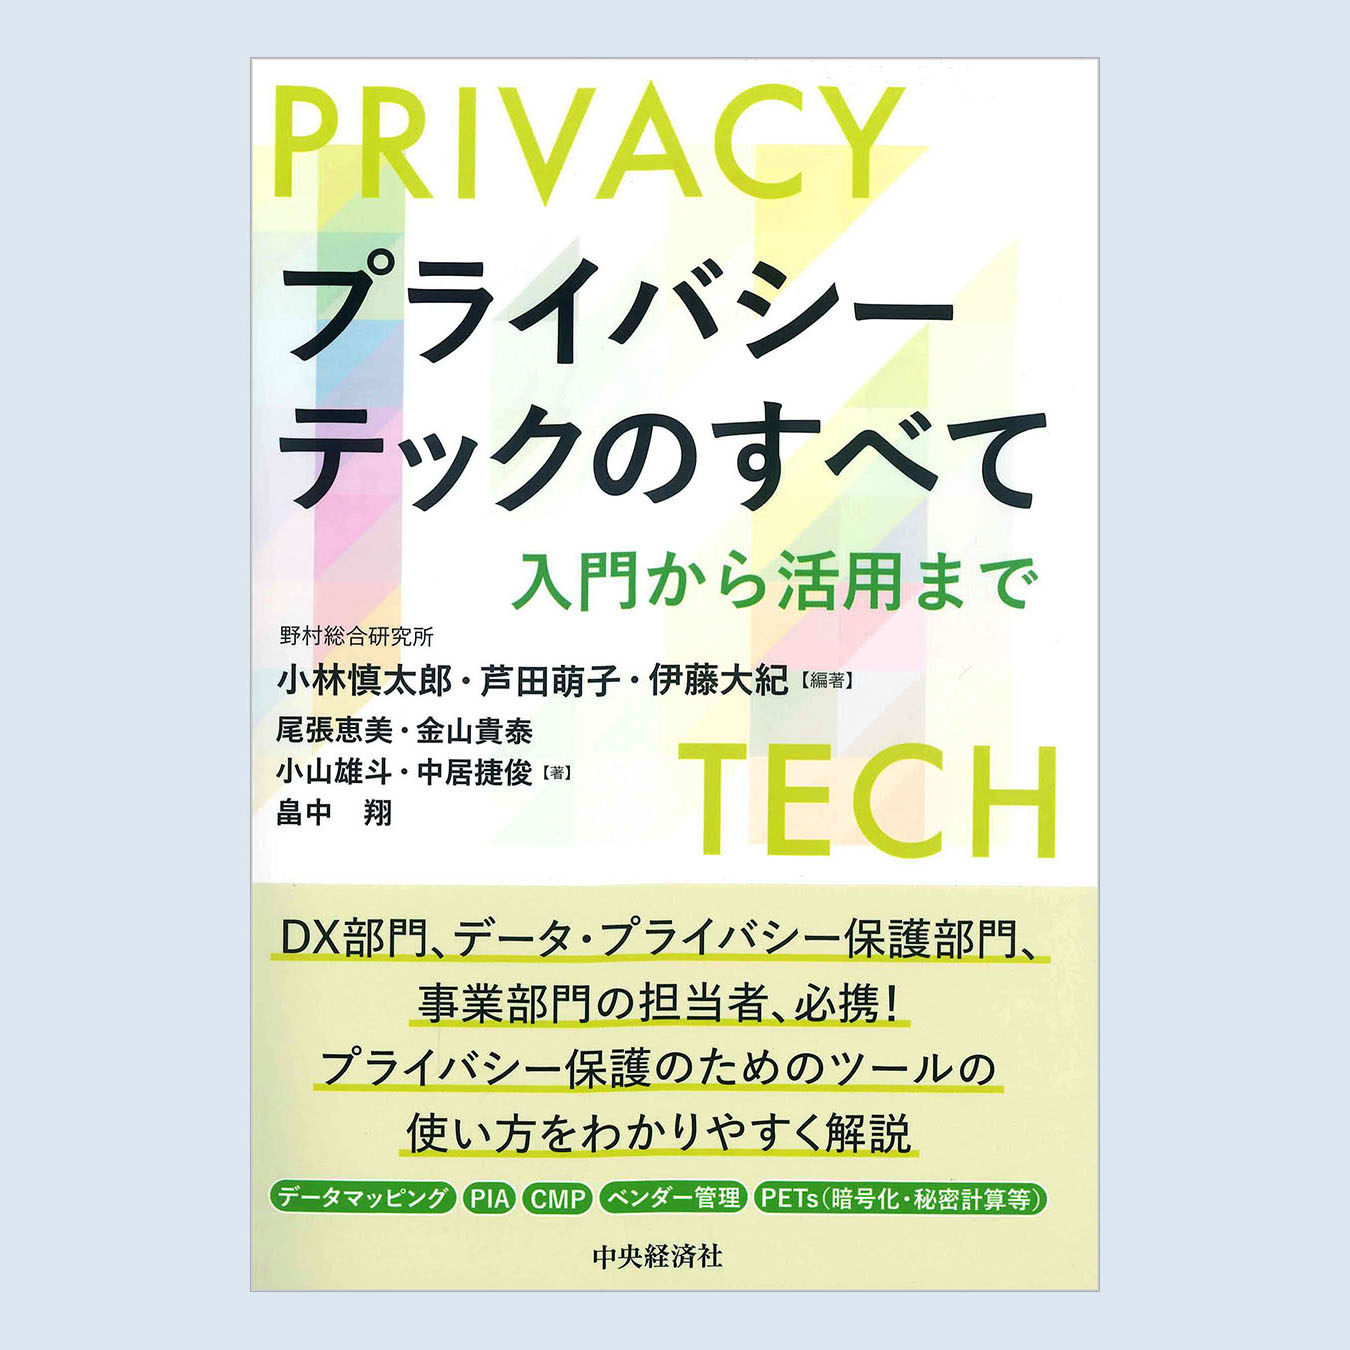 書籍『プライバシーテックのすべて 入門から活用まで』のご紹介 - atlax blogs